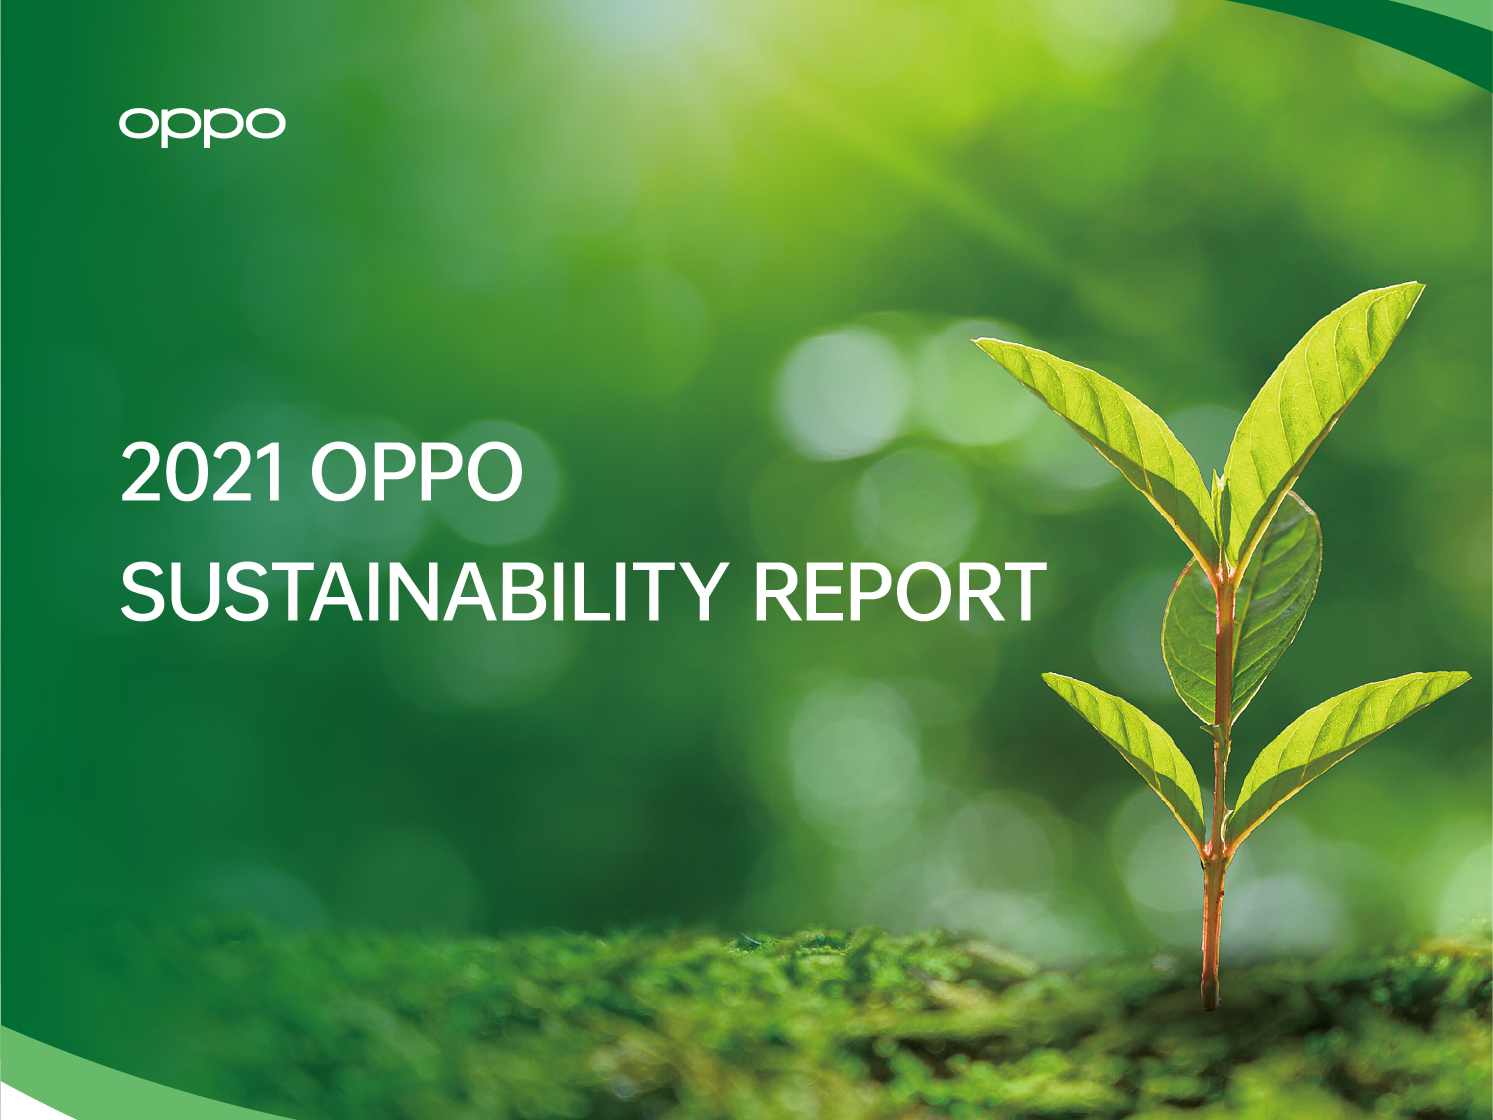 Mobil Dünya Kongresi'nde Yeni Yeşil Teknolojilerini Tanıtmaya Hazırlanan OPPO, 2021 Sürdürülebilirlik Raporu'nu Yayınladı